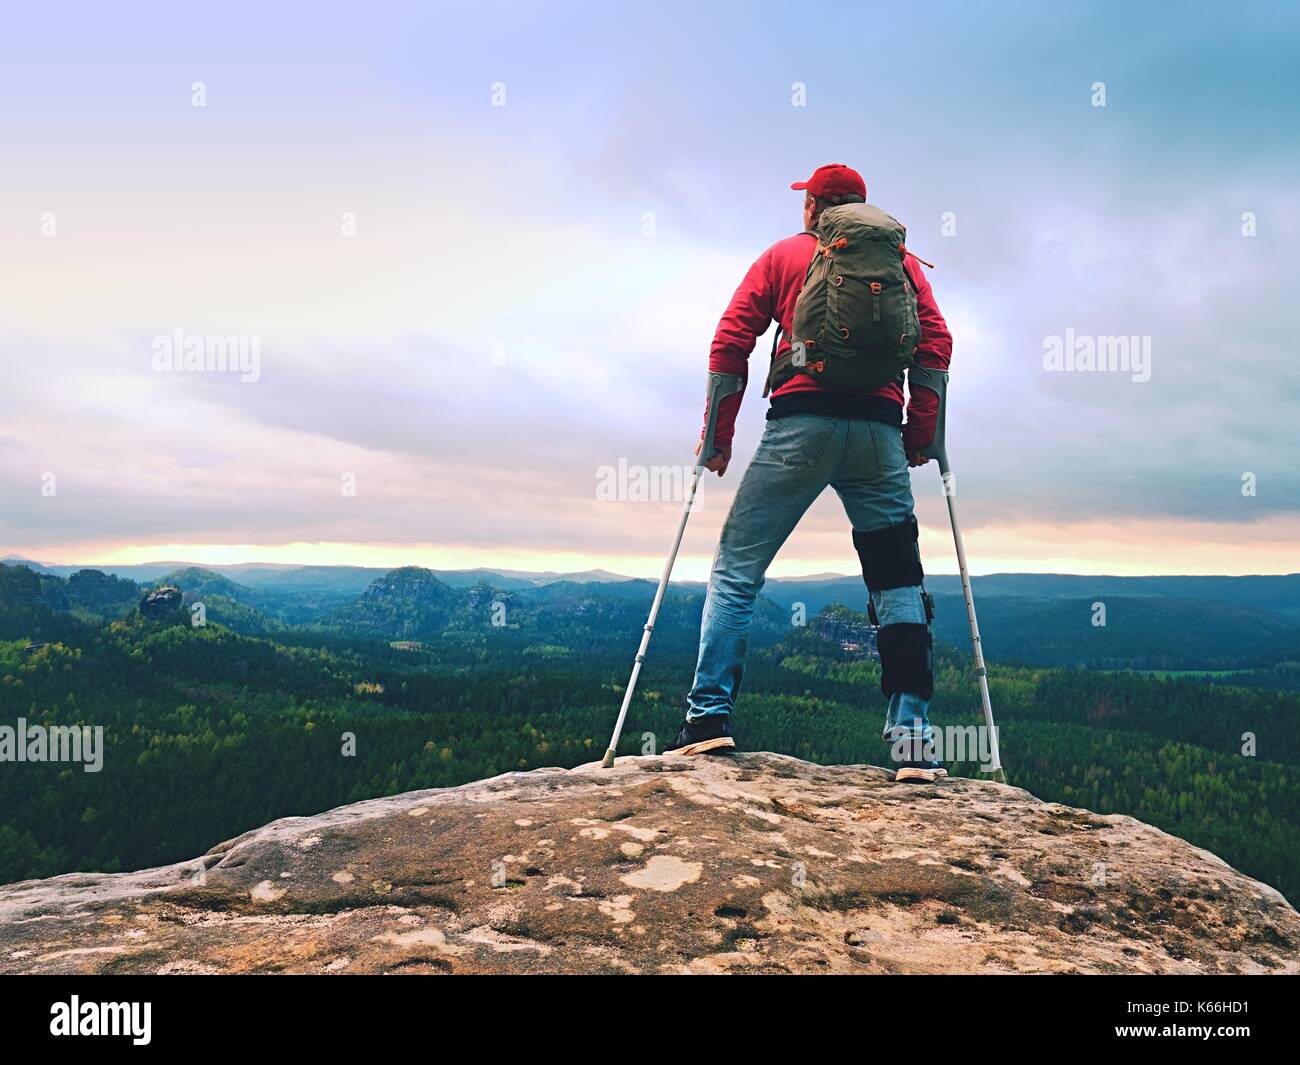 Behinderte Menschen mit Krücken steht auf einem großen Felsen und Blick in die Berge am Horizont. Wanderer Silhouette mit Medizin Krücke auf Berggipfel. Stockfoto